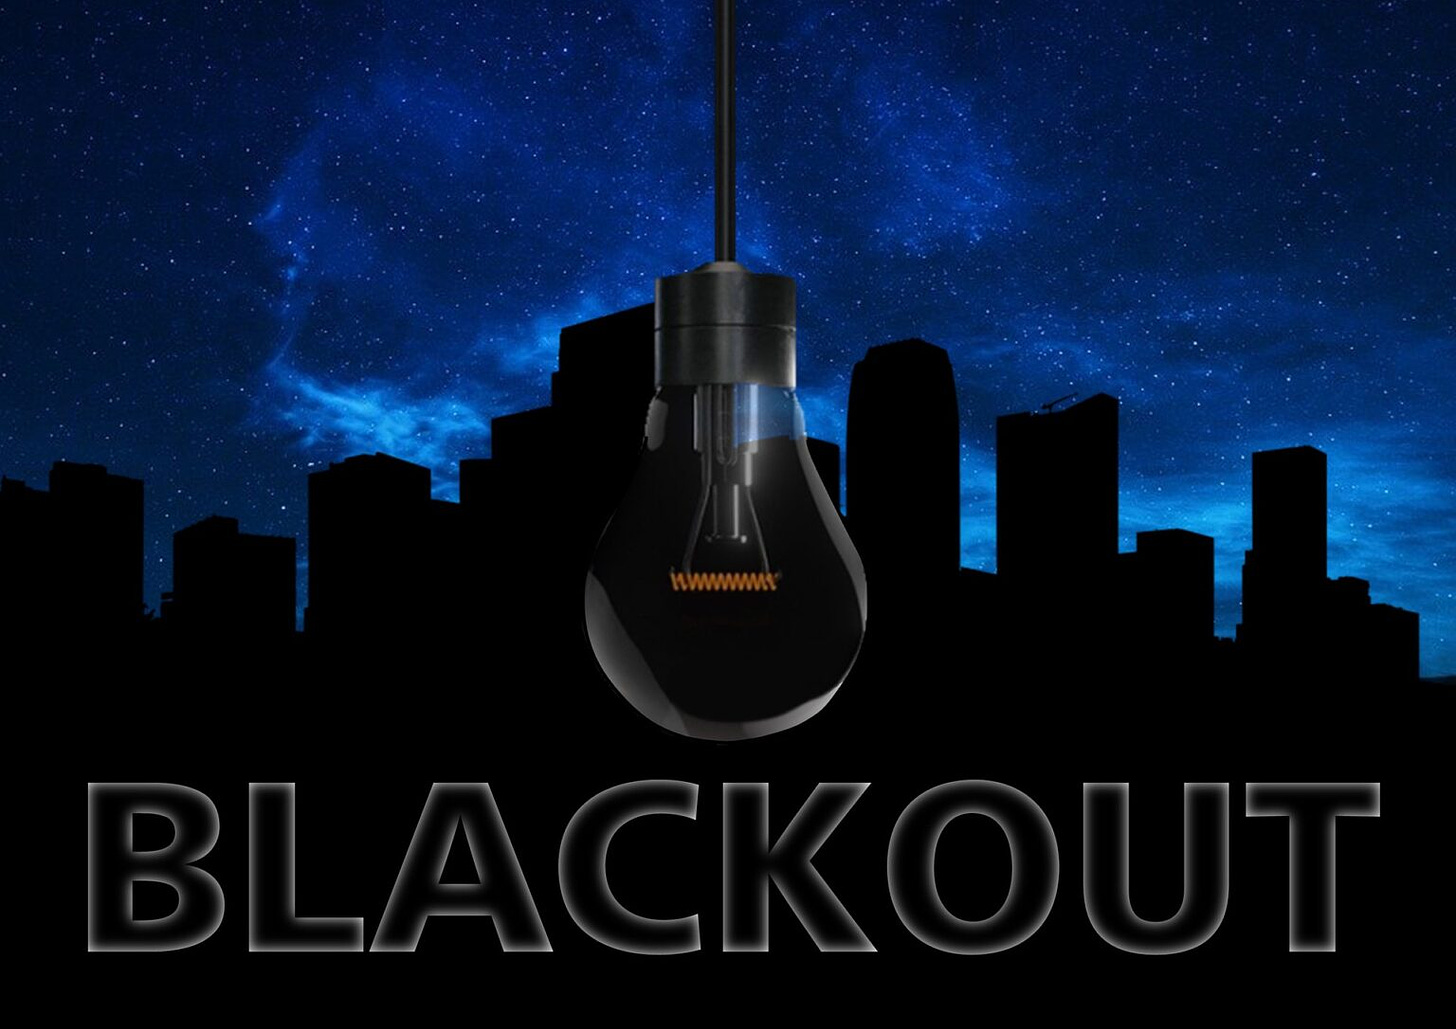 blackout-ga1e56691a_1920-1536x1086.jpg